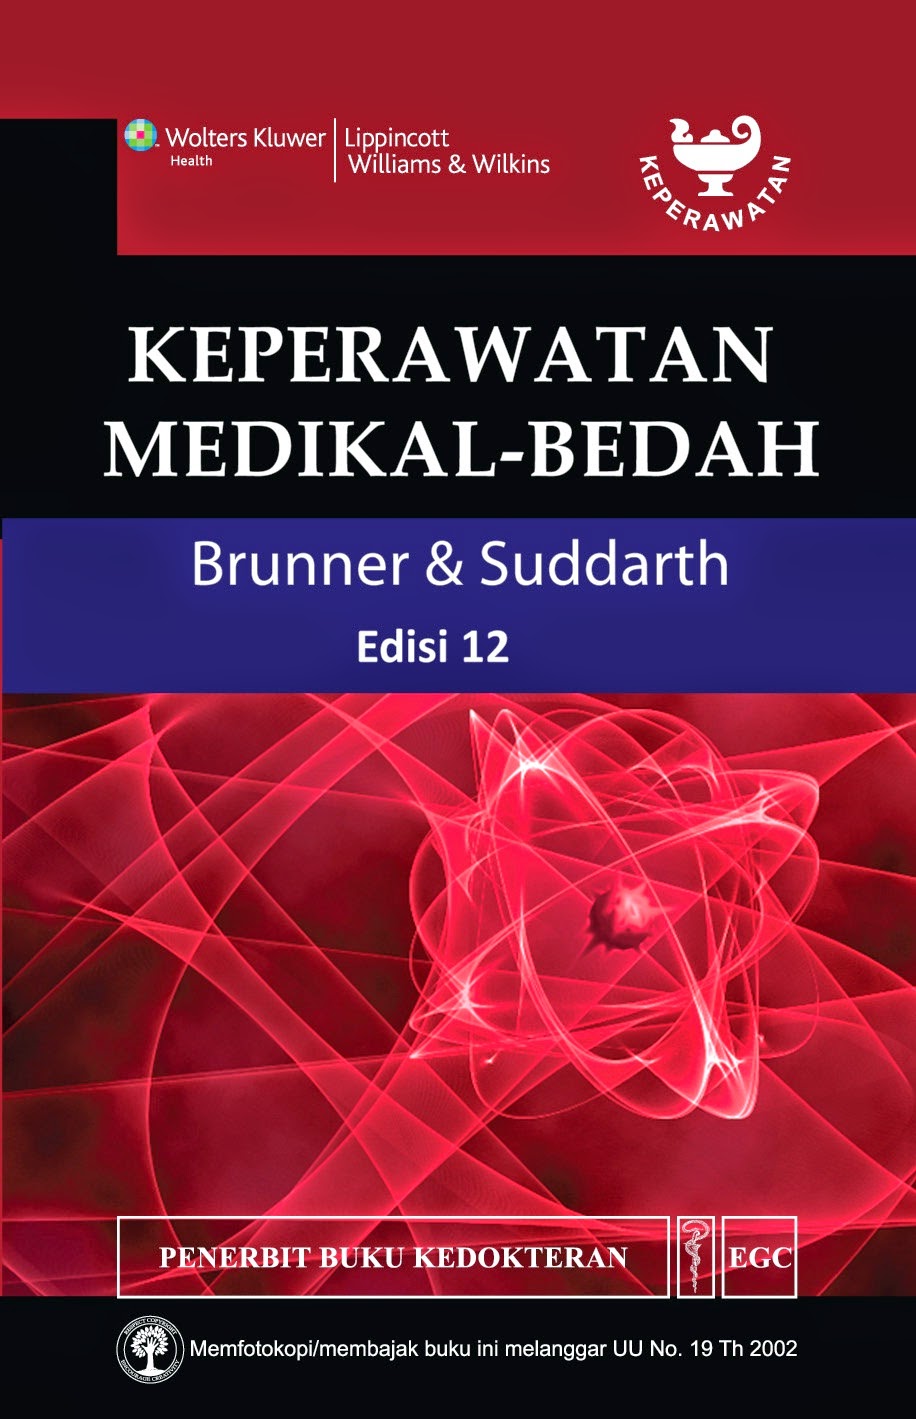 Keperawatan Medikal-Bedah Brunner & Suddarth ed. 12